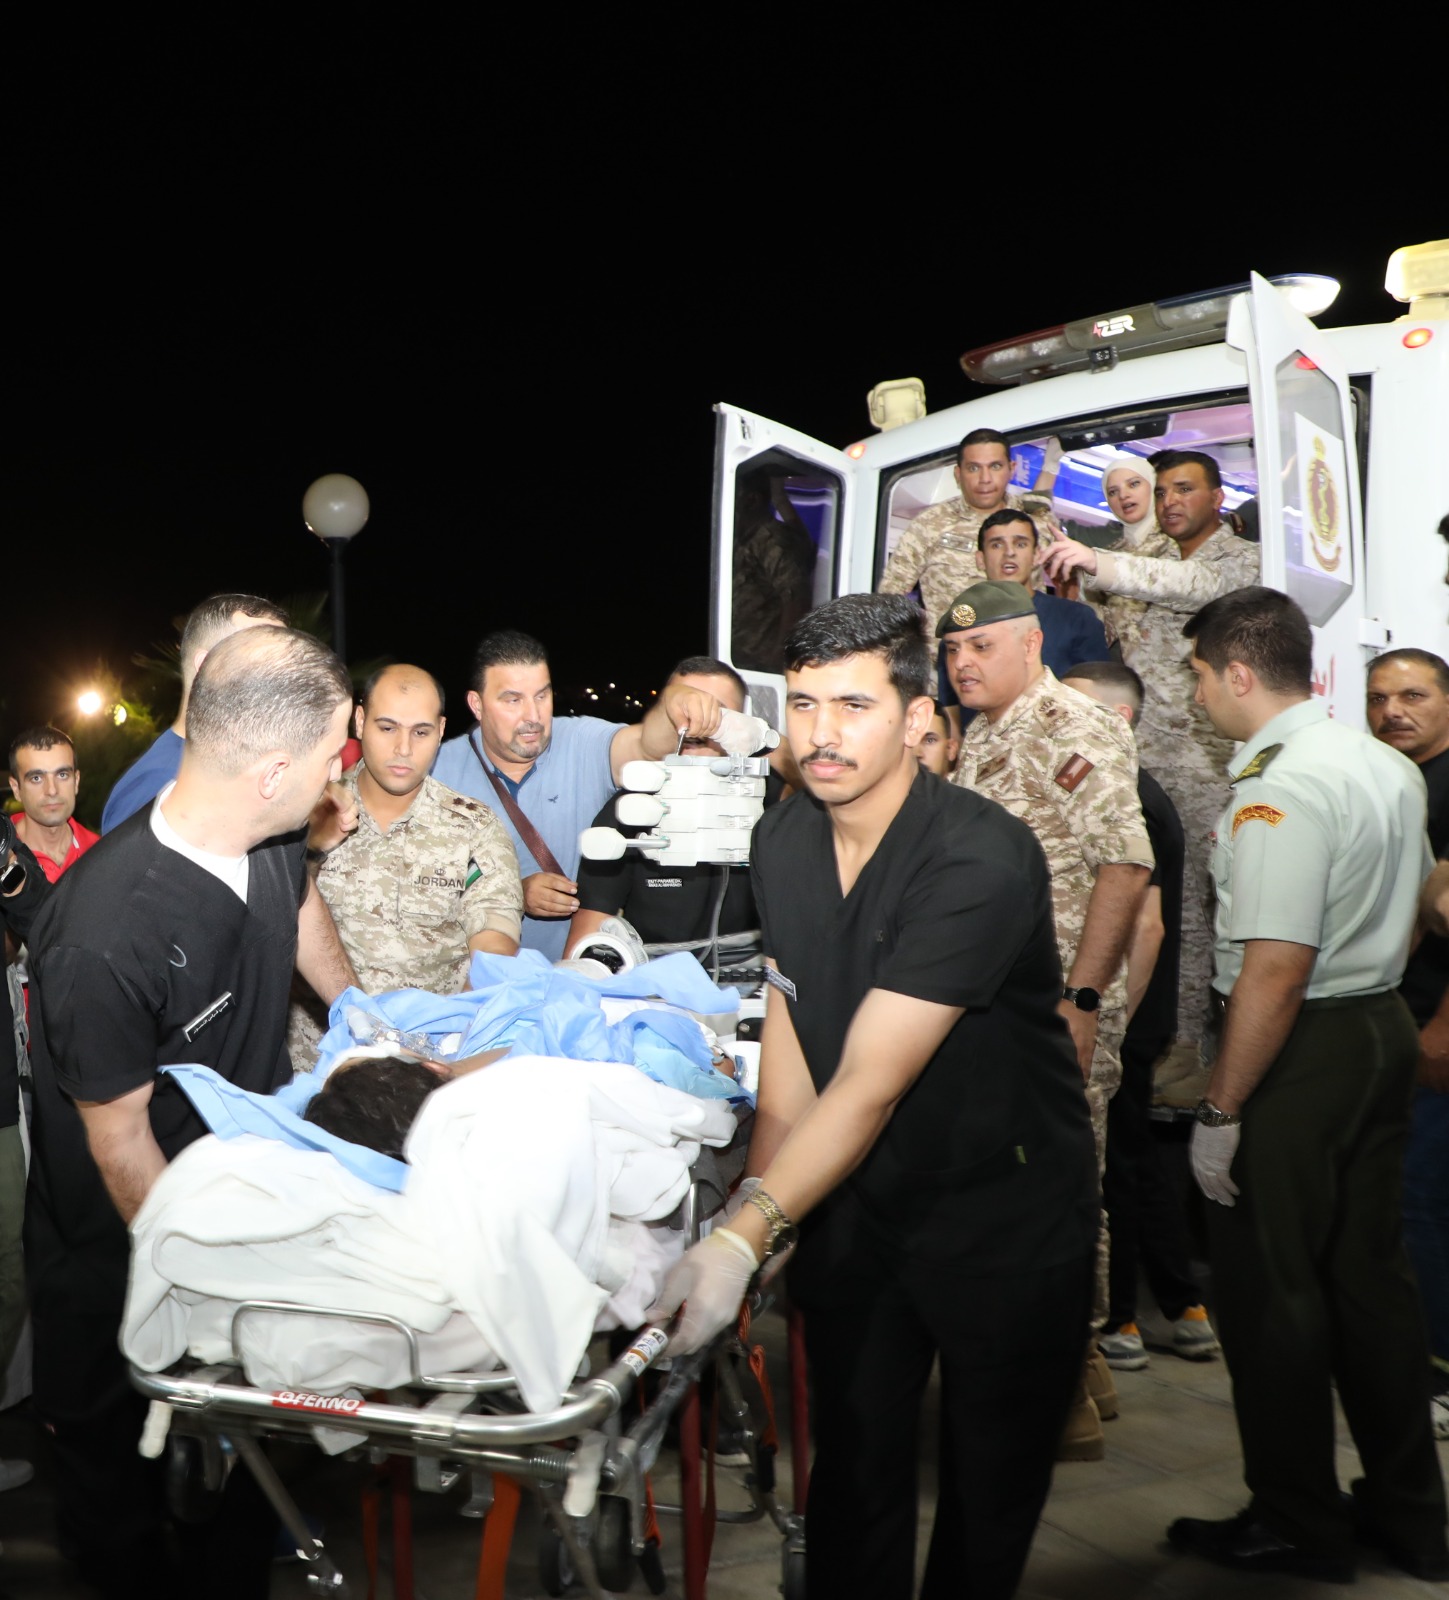 بتوجيهات ملكية ..  طائرة لإخلاء 5 أردنيين تعرضوا لحادث في السعودية (صور) 